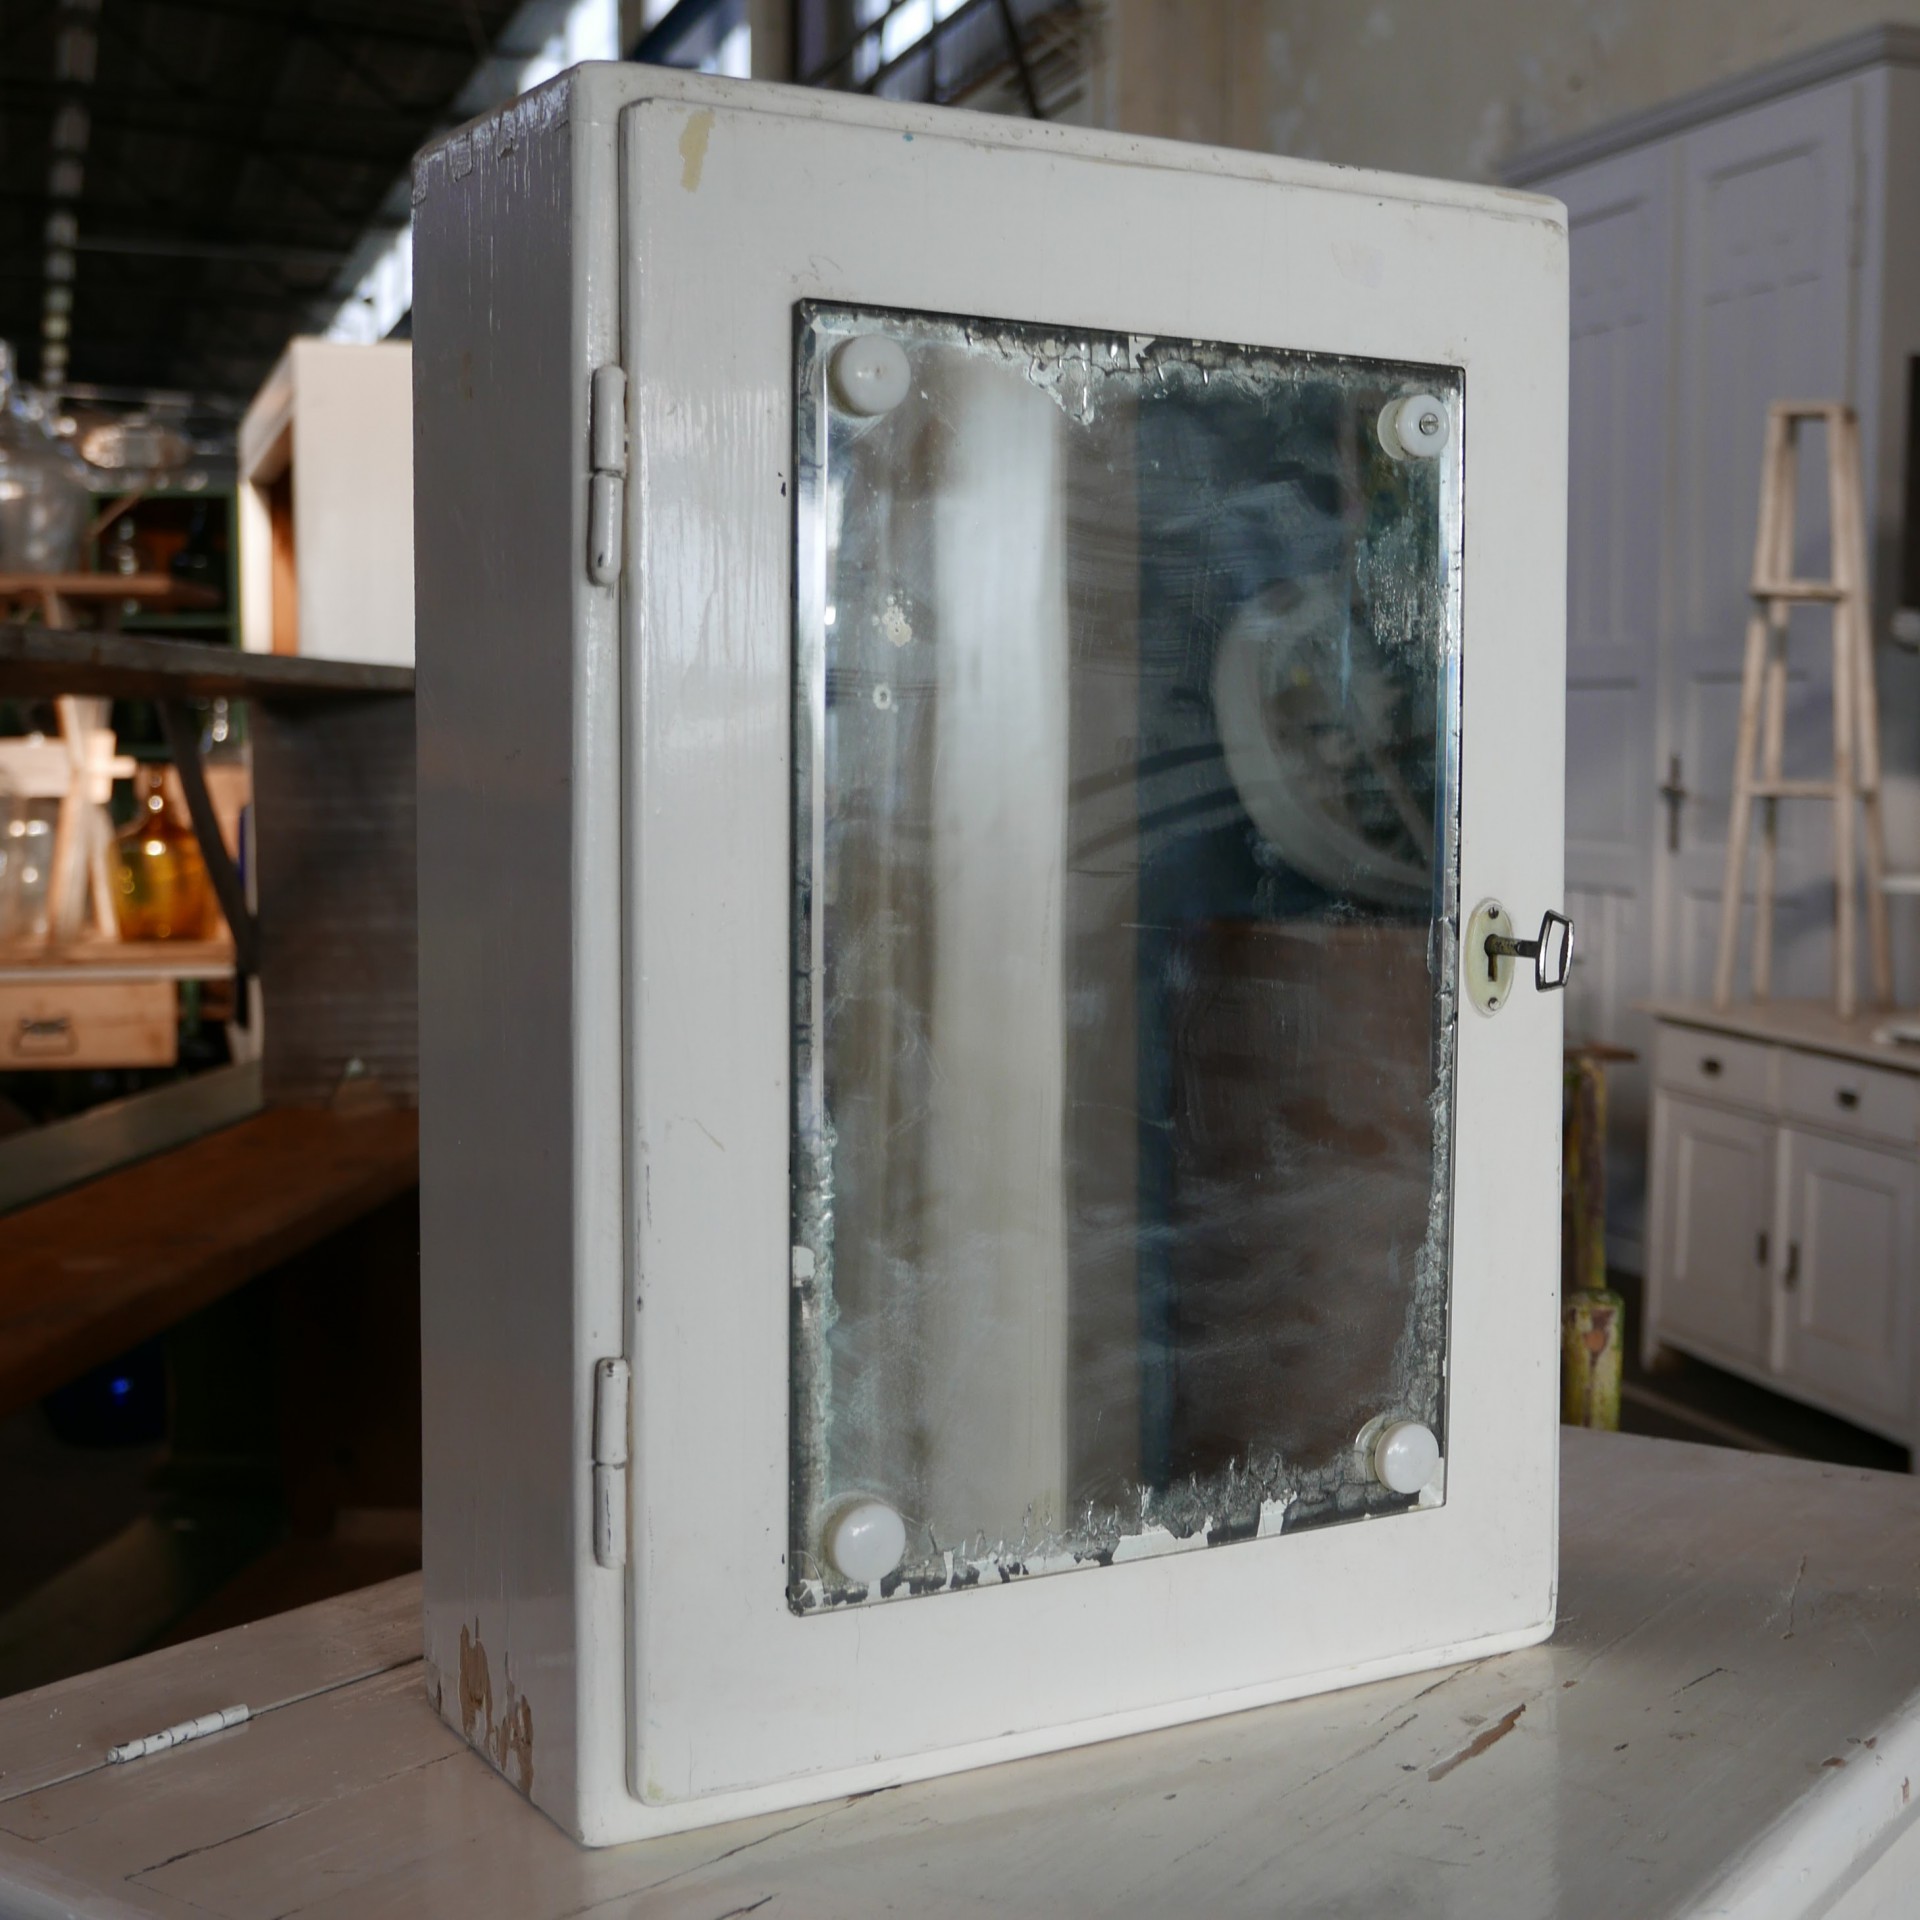 stimuleren Fantasierijk koppeling Wit hangkastje met spiegel » Van Dijk & Ko